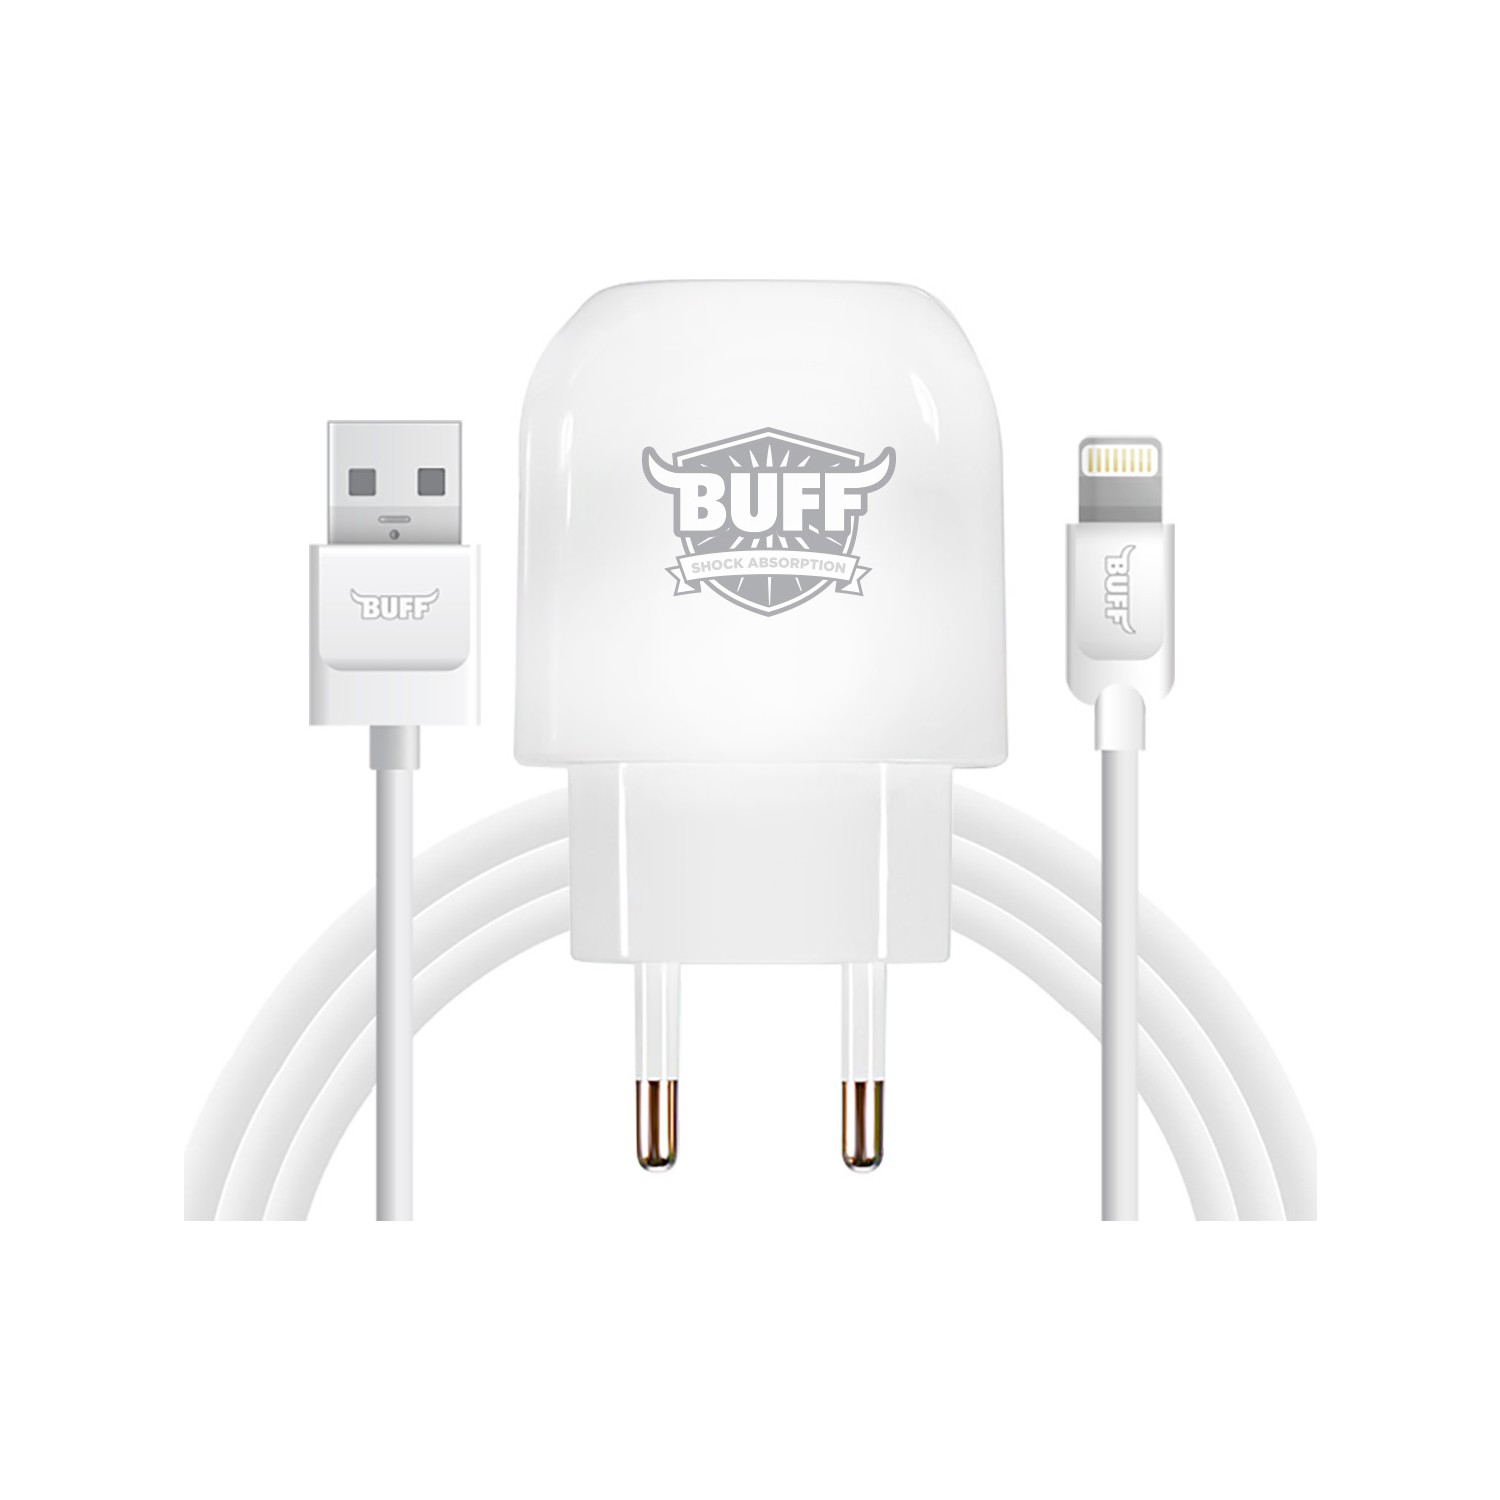 Buff Dual USB Charger Lightning İOS Şarj Seti beyaz telefondukkani.com.tr den satın alabilirsiniz.